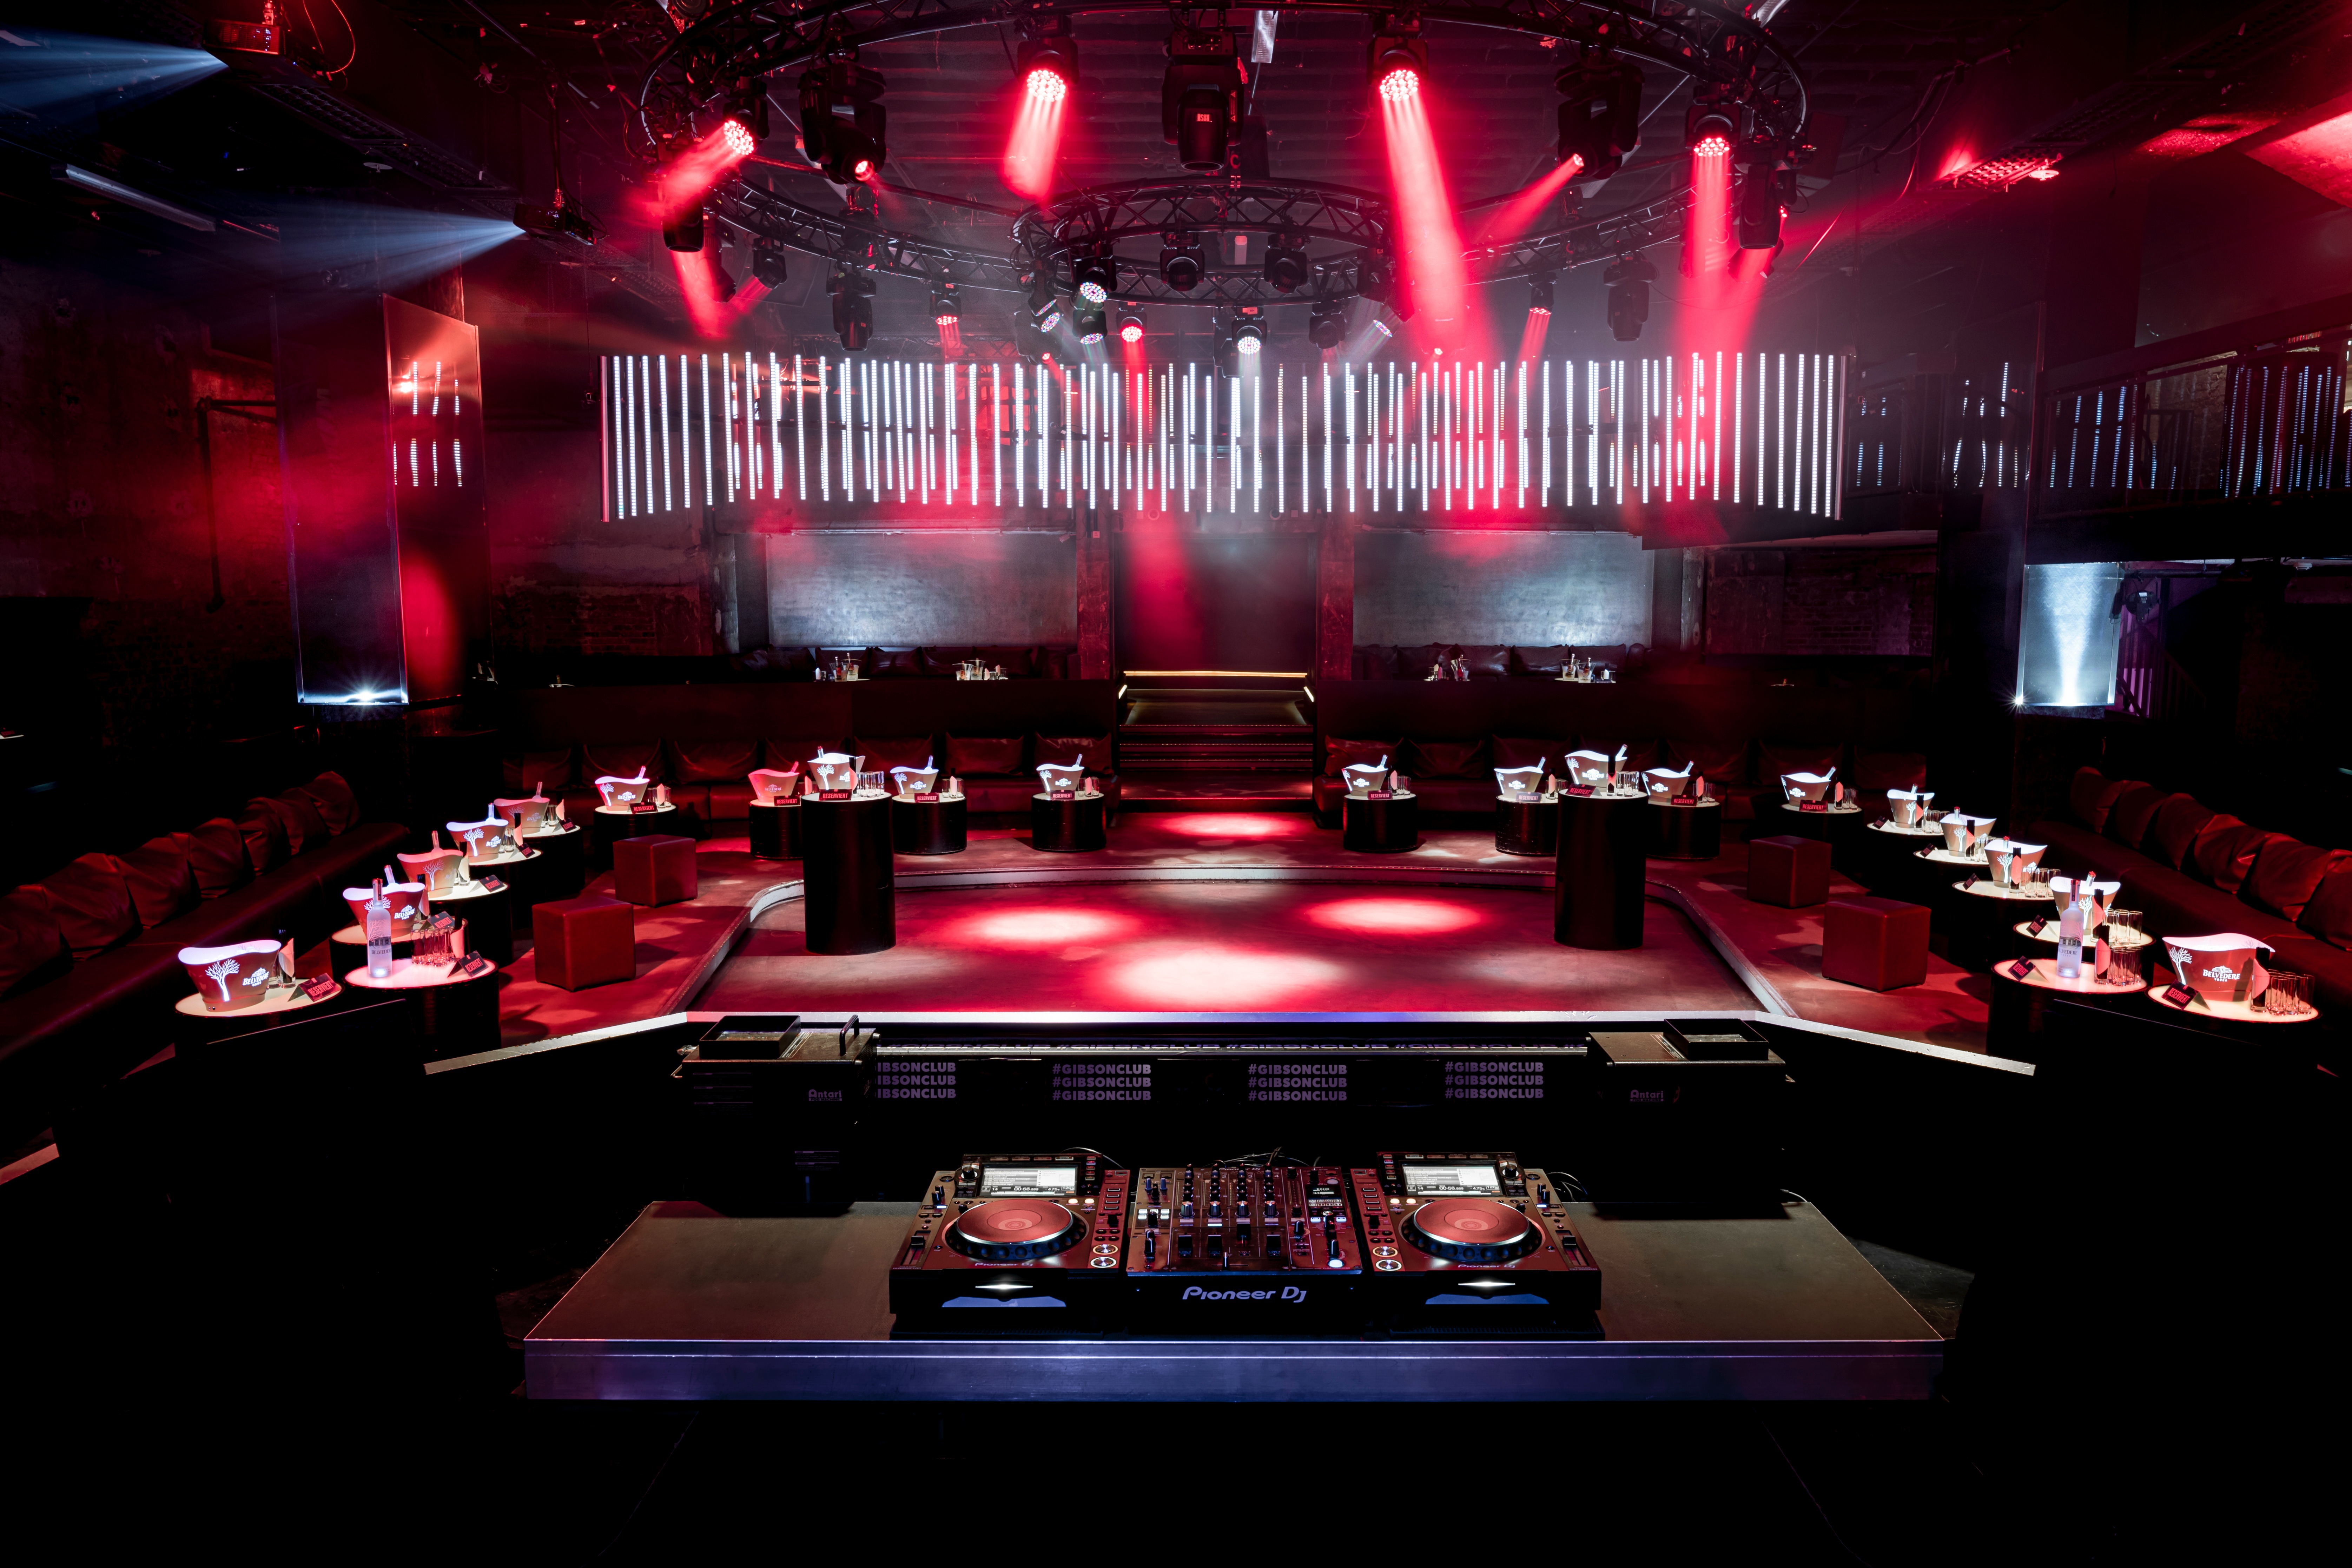 Die Tanzfläche des Clubs wird auch für Podiumsdiskussionen oder als Konzertfläche genutzt. , Credit: © Gibson GmbH & Co. KG